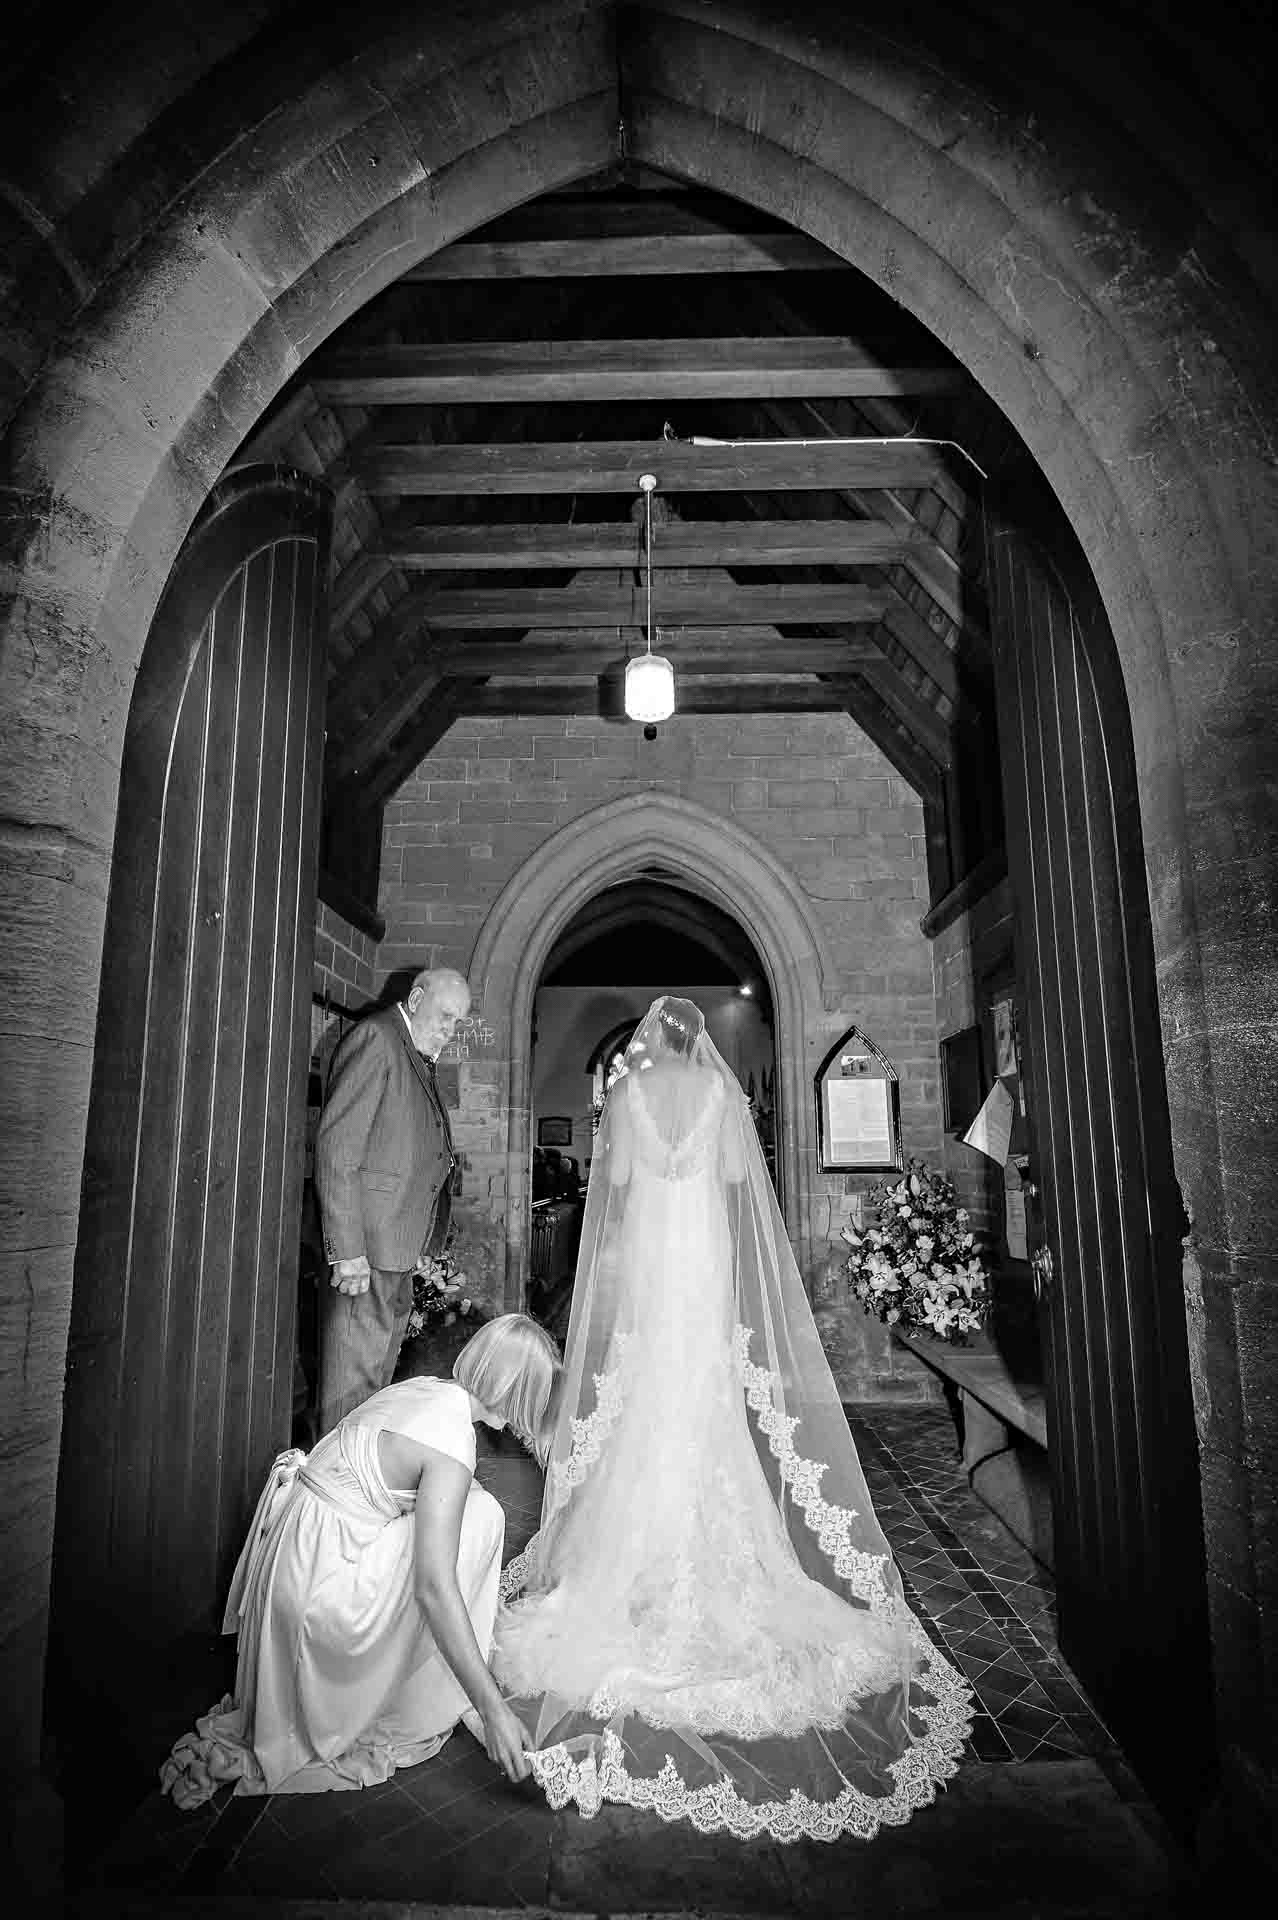 Bridesmaid arranging bride's dress in church doorway